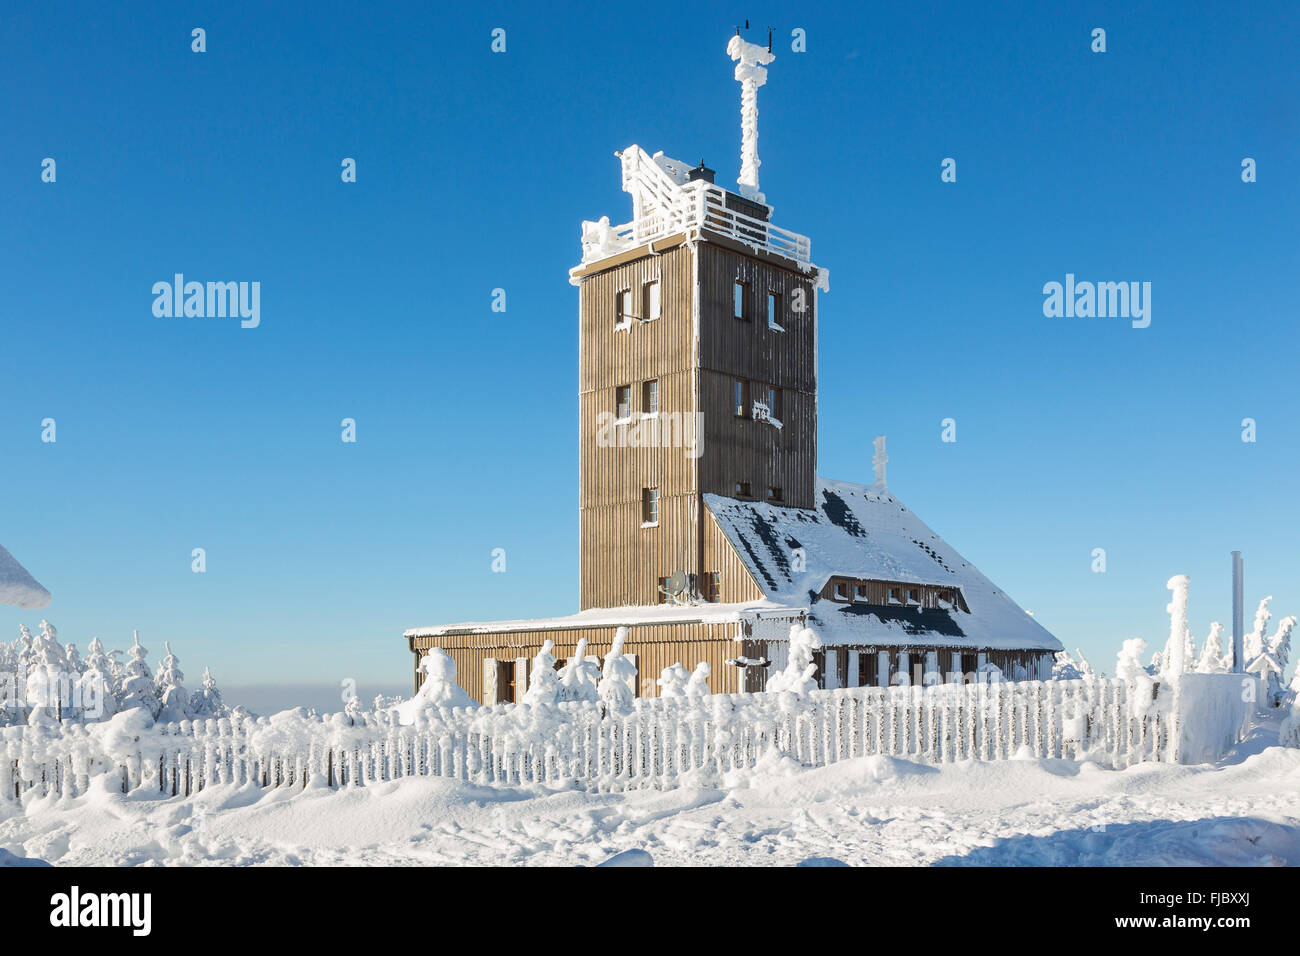 Wetterstation auf dem Gipfel des Fichtelberg mit Schnee im Winter,  Oberwiesenthal Health Resort, Erzgebirge, Sachsen, Deutschland  Stockfotografie - Alamy